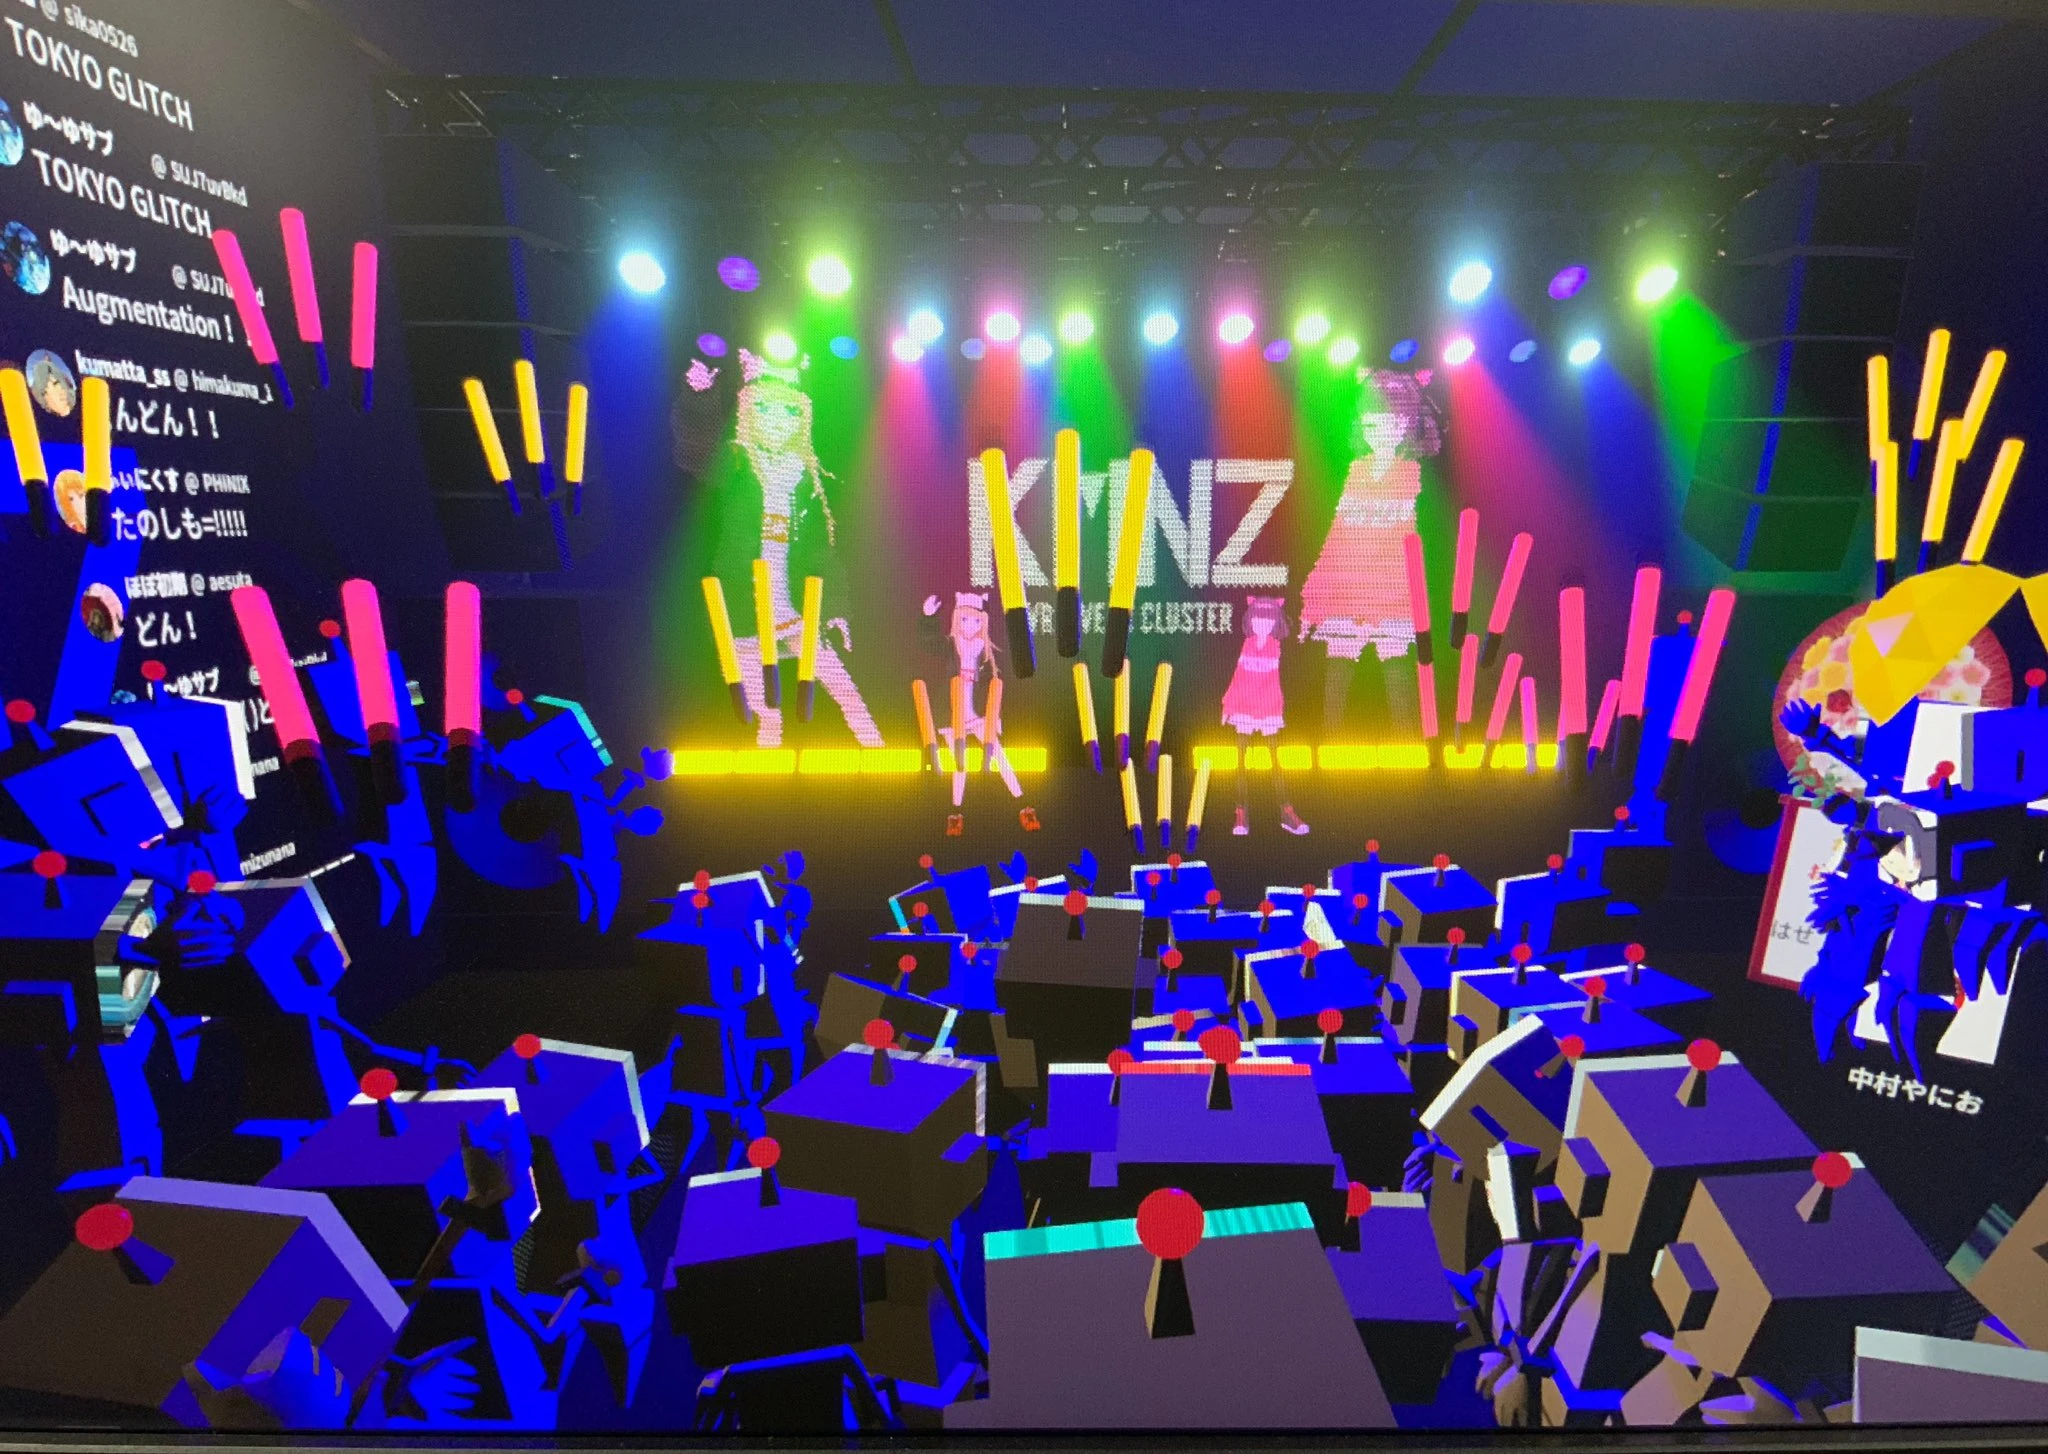 「KMNZ VR LIVE」in clusterの様子/画像はKMNZプロデューサーninoPさんのTwitterより